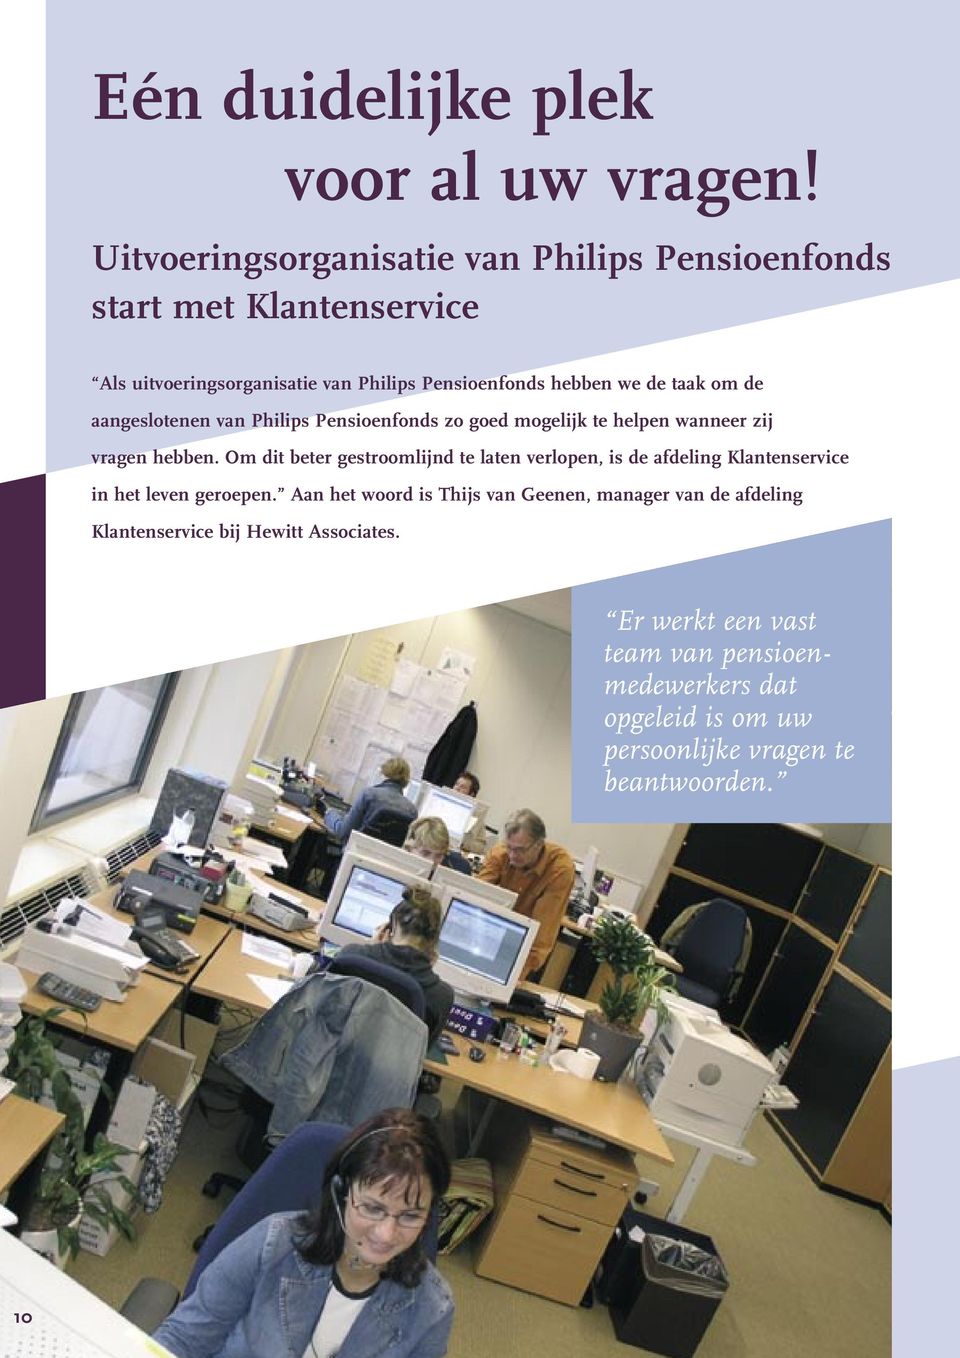 om de aangeslotenen van Philips Pensioenfonds zo goed mogelijk te helpen wanneer zij vragen hebben.